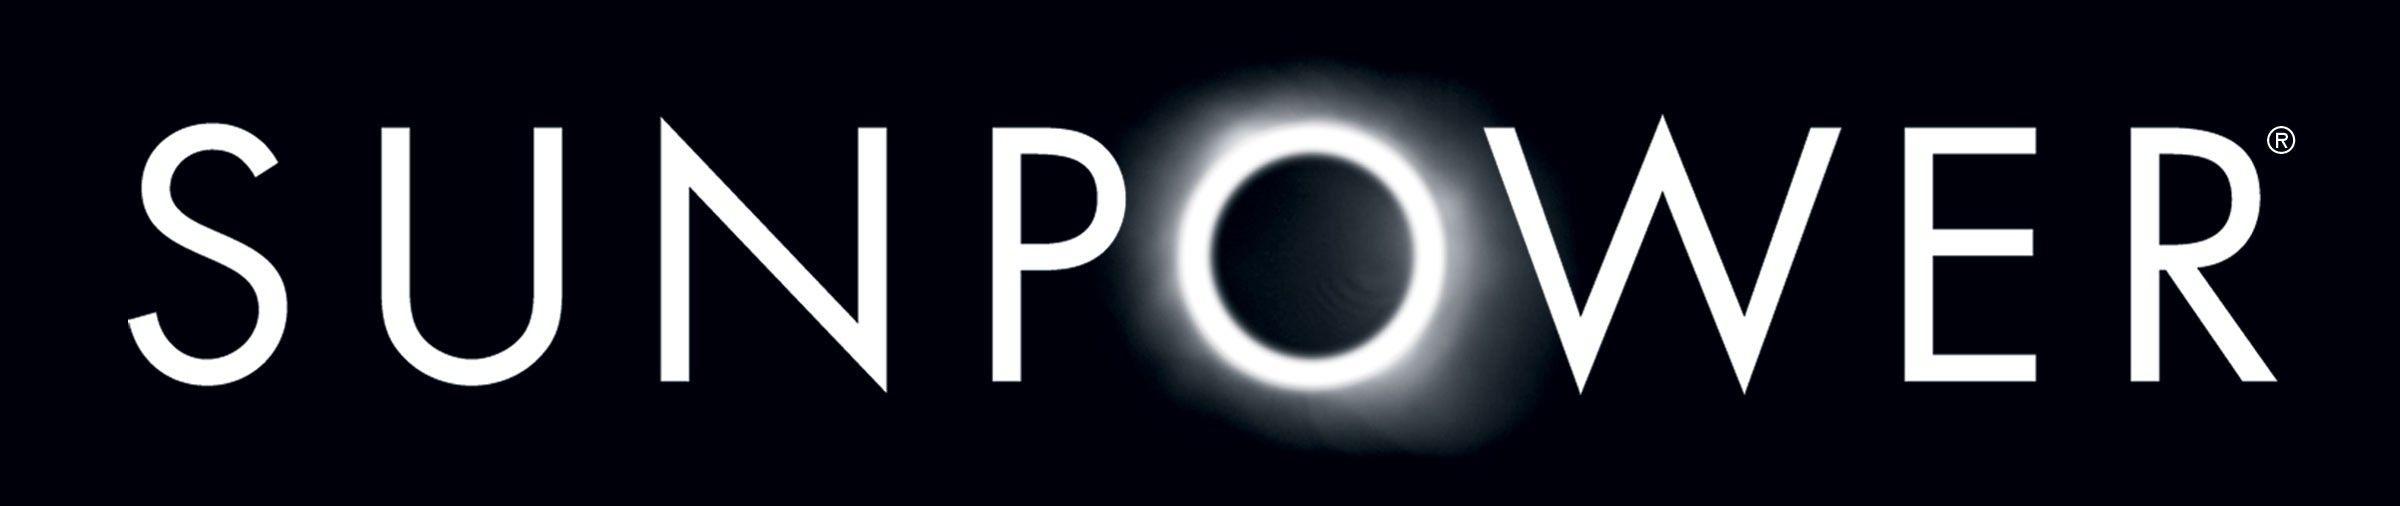 SunPower Logo - Sunpower | solar logos | Solar logo, Solar, Energy news